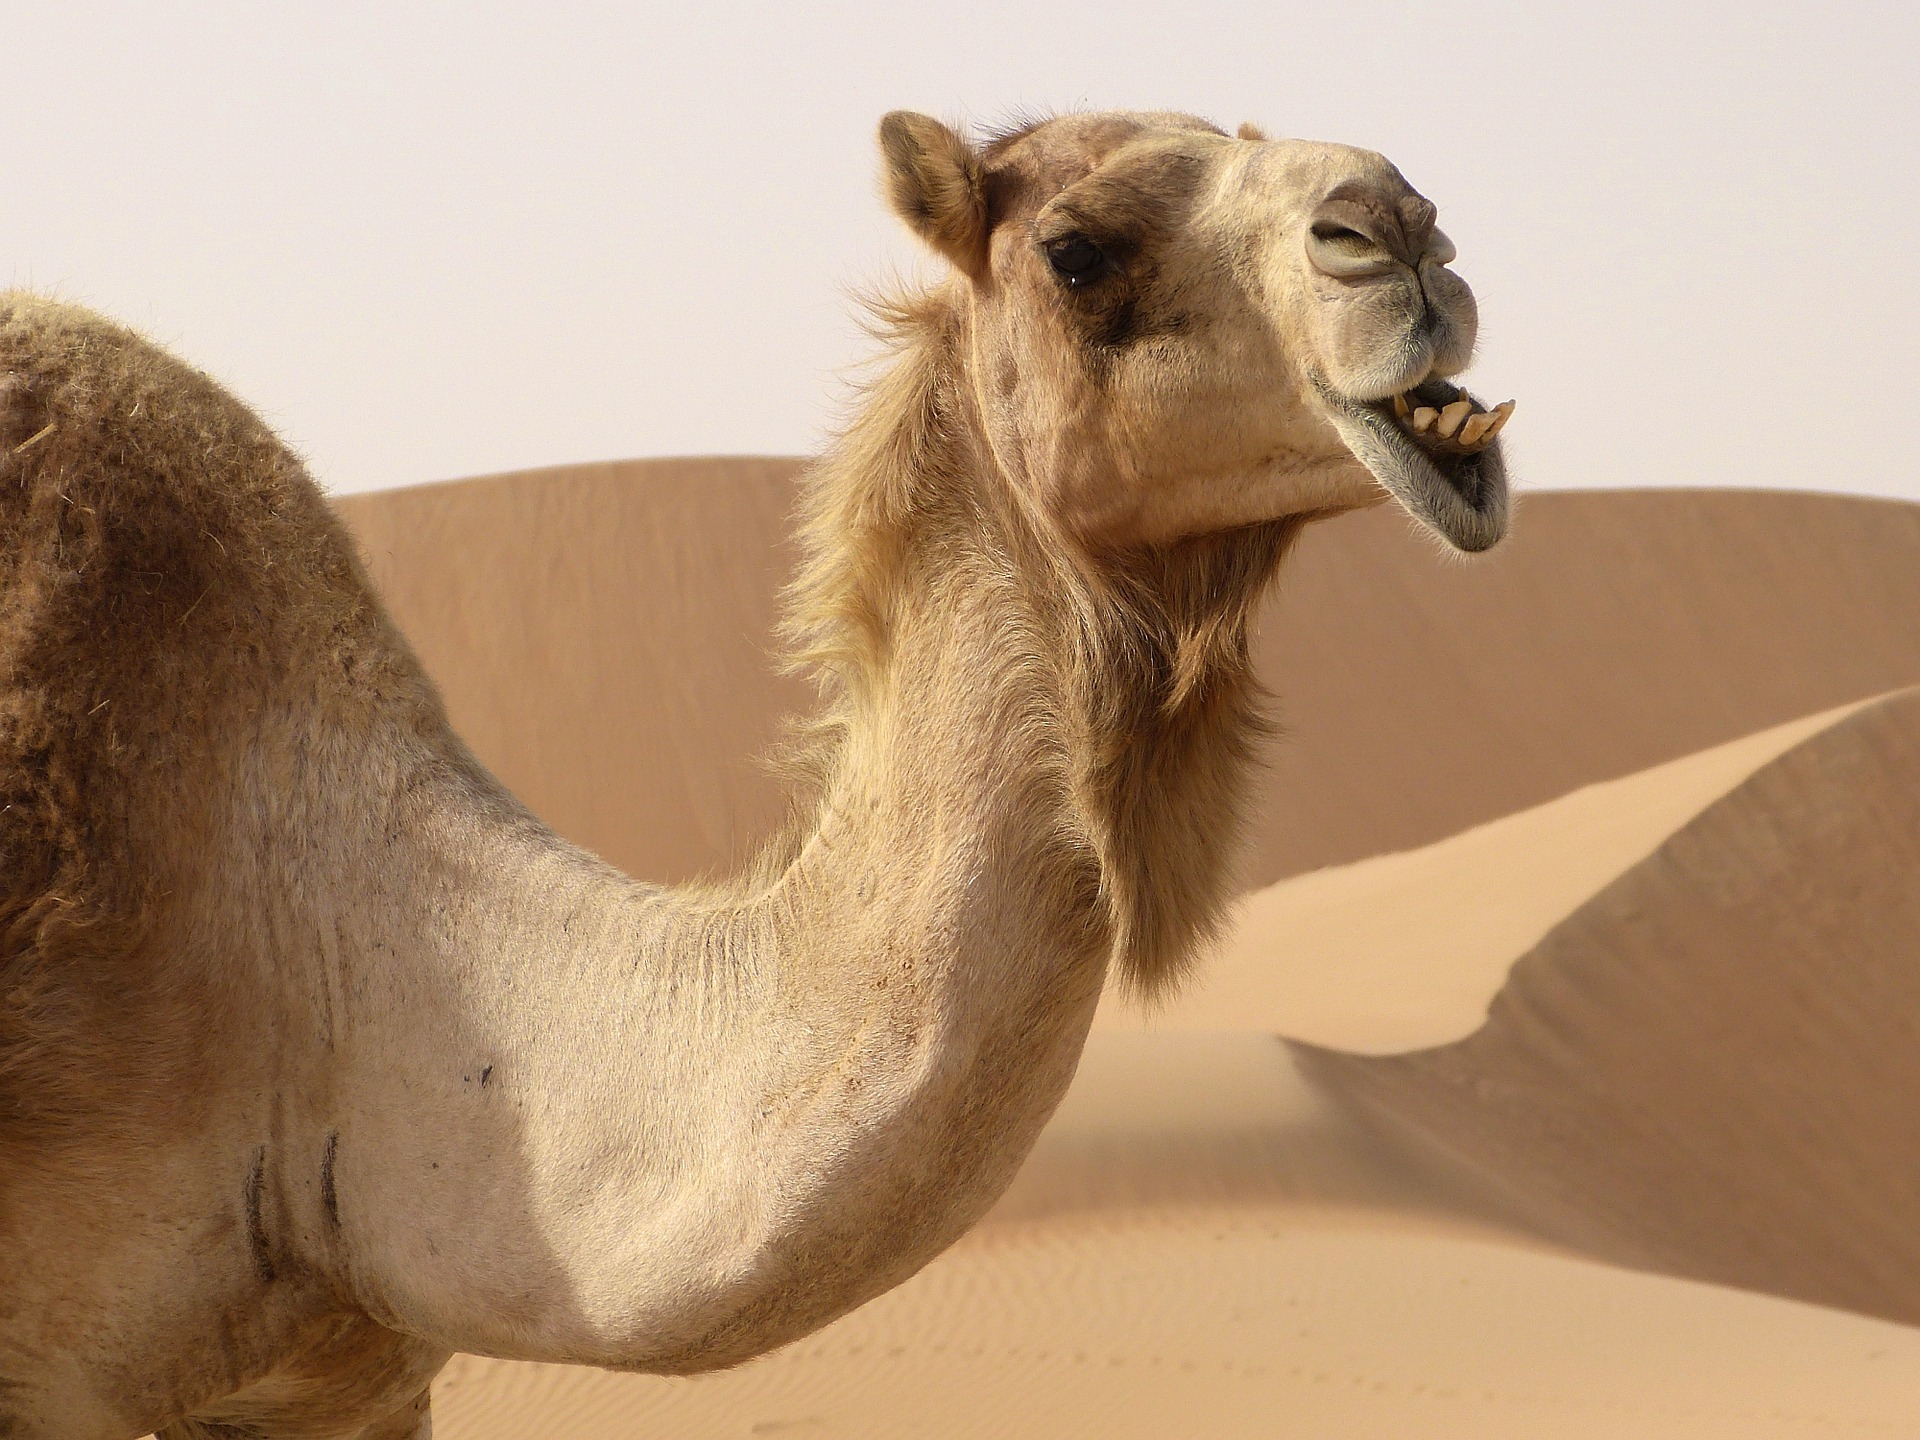 Vuelven las carreras de camellos en Egipto después de la pausa por la covid-19